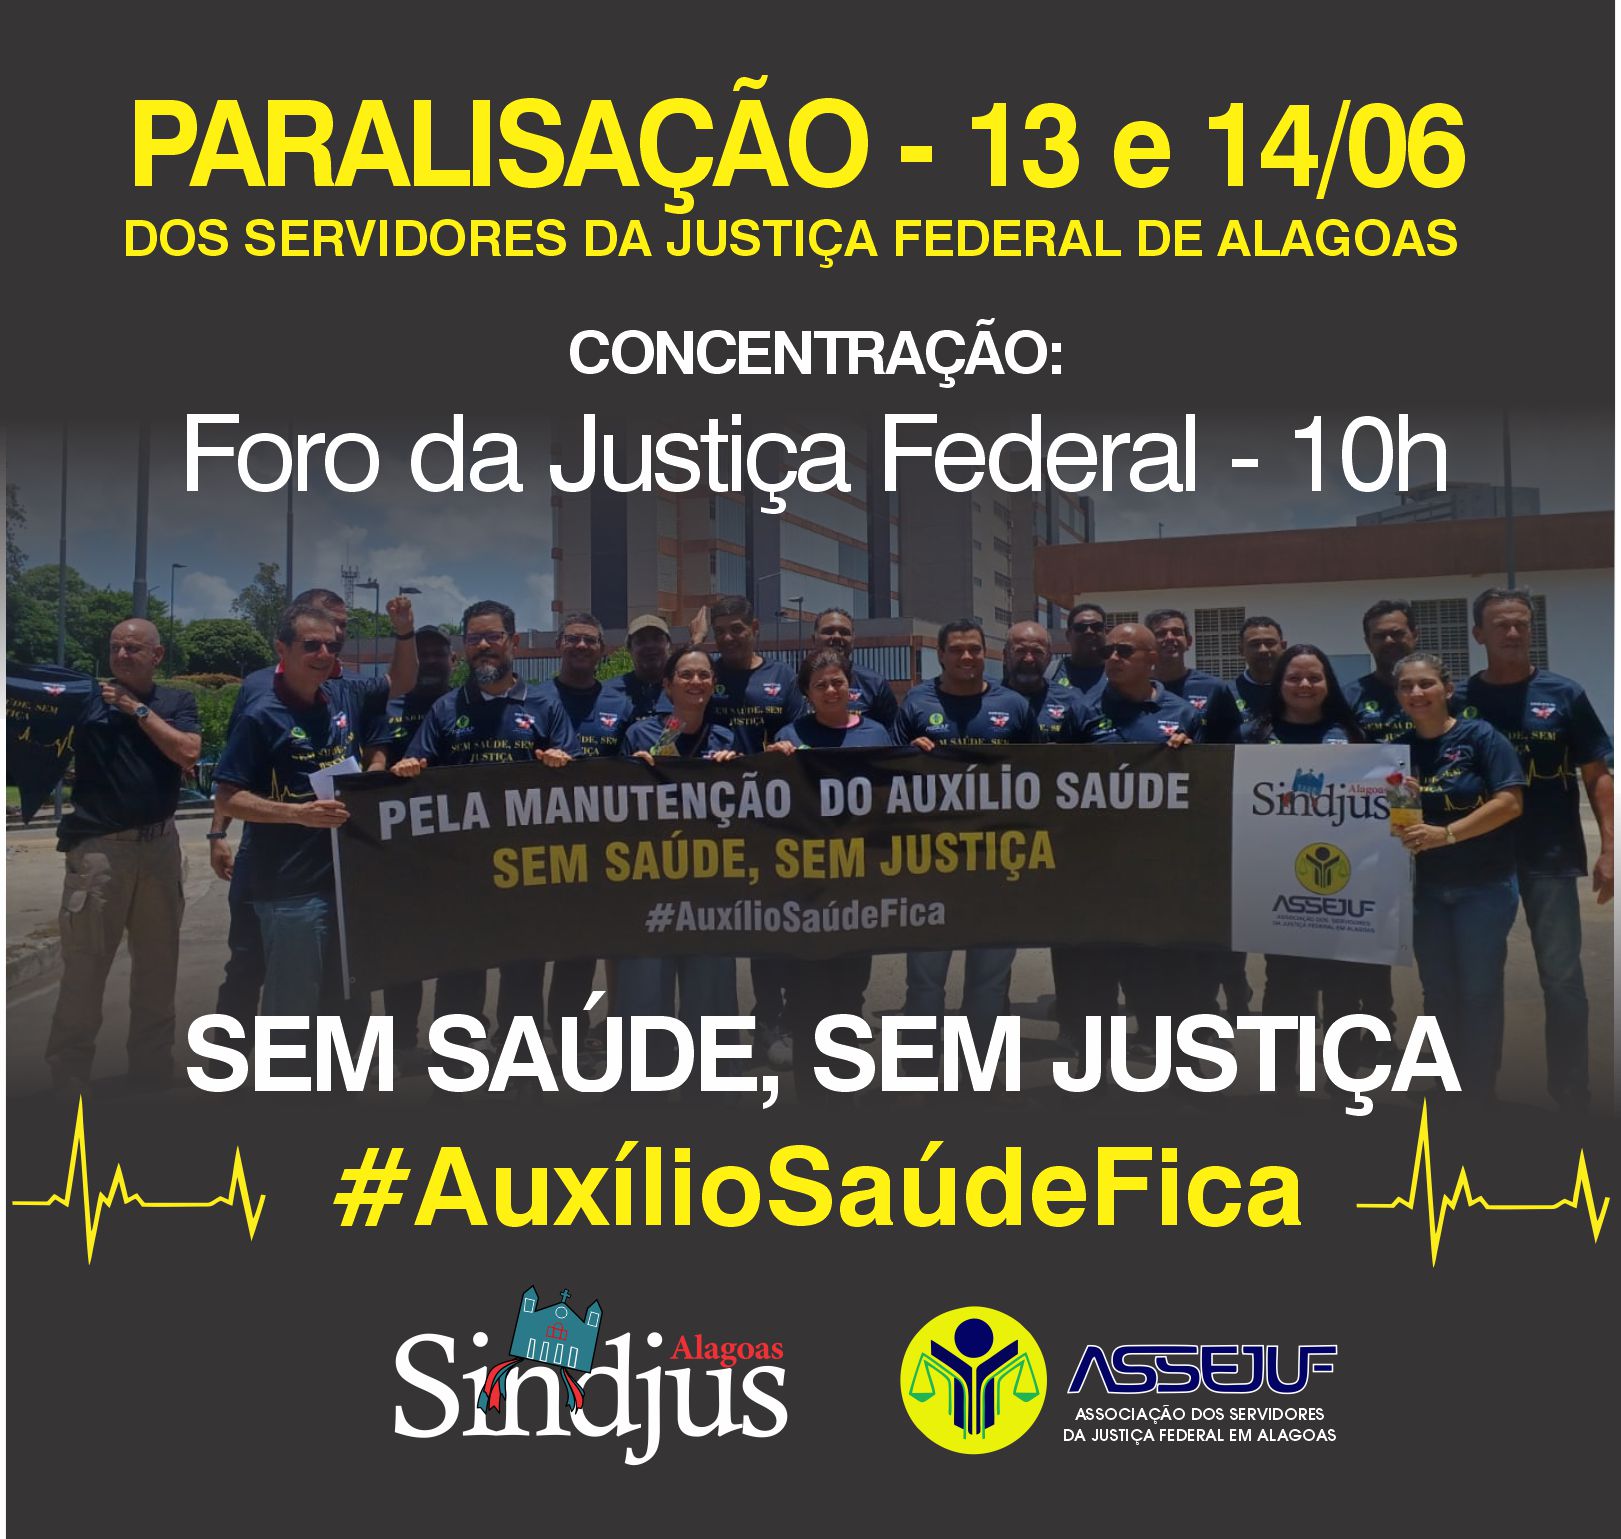 Servidores da Justiça Federal de Alagoas paralisarão suas atividades nos dias 13 e 14 de junho pela manutenção do auxílio-saúde